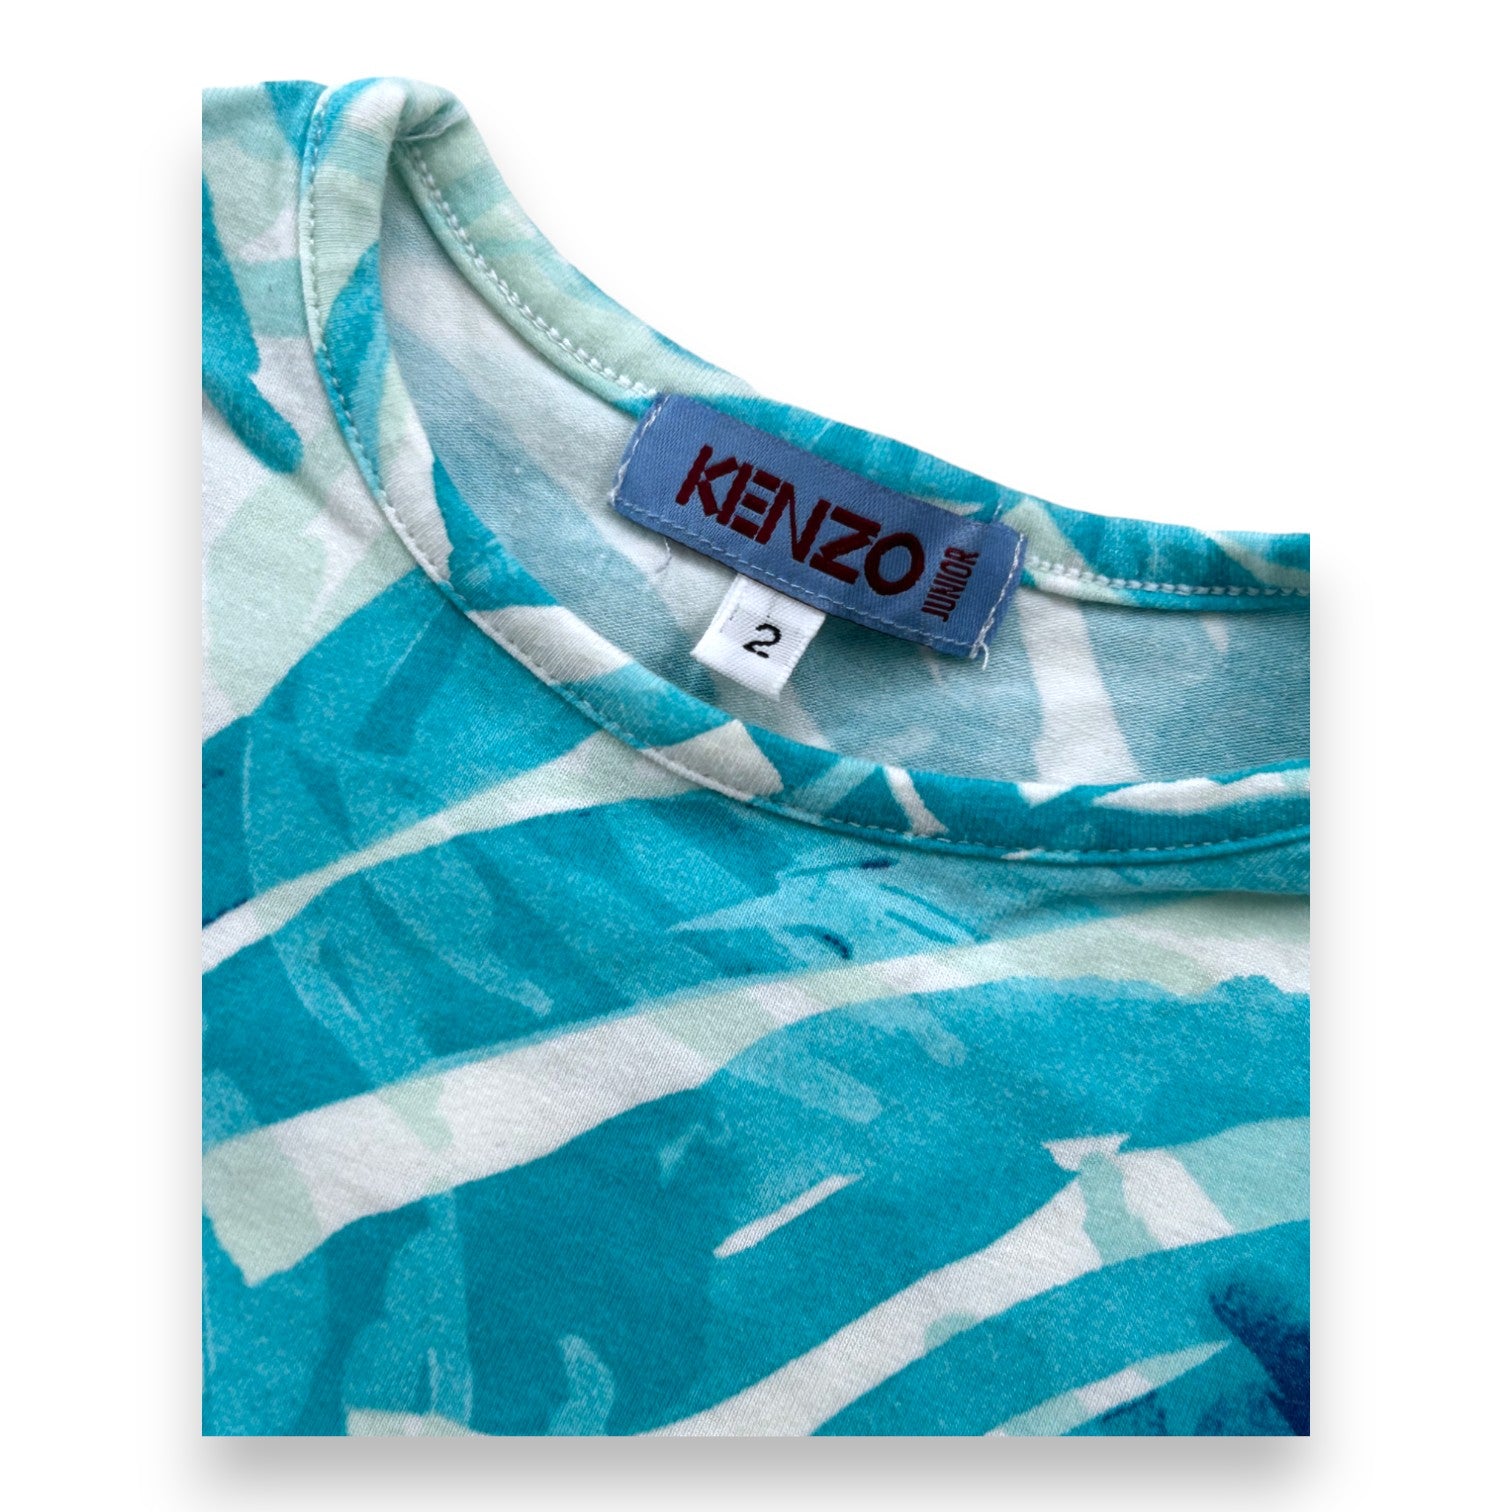 KENZO - T-shirt bleu à motifs feuilles - 2 ans